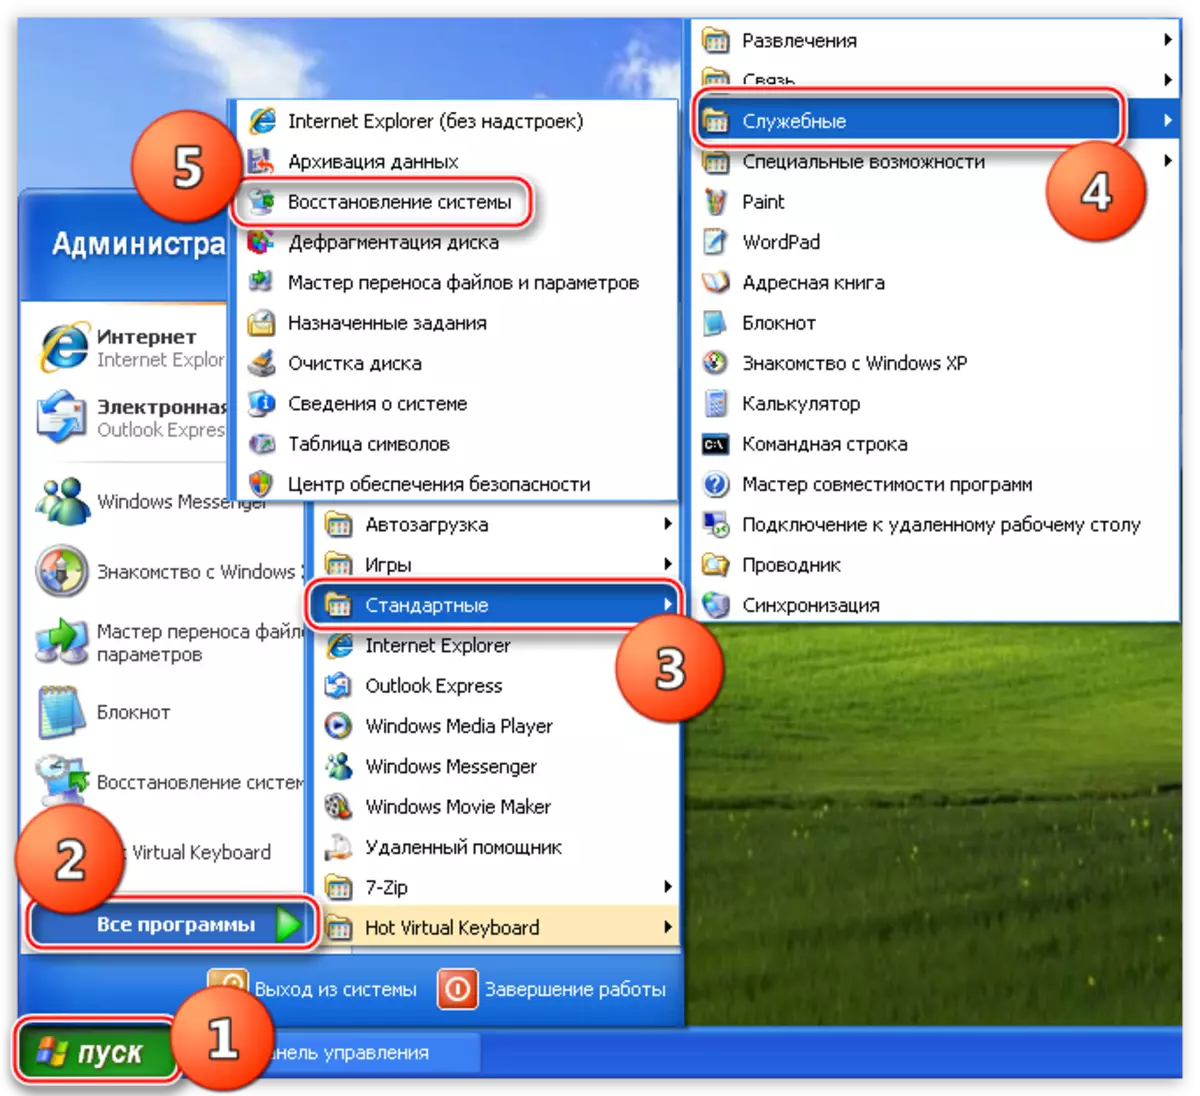 Toegang tot die nut herstel stelsel met behulp van die begin menu in die Windows XP bedryfstelsel